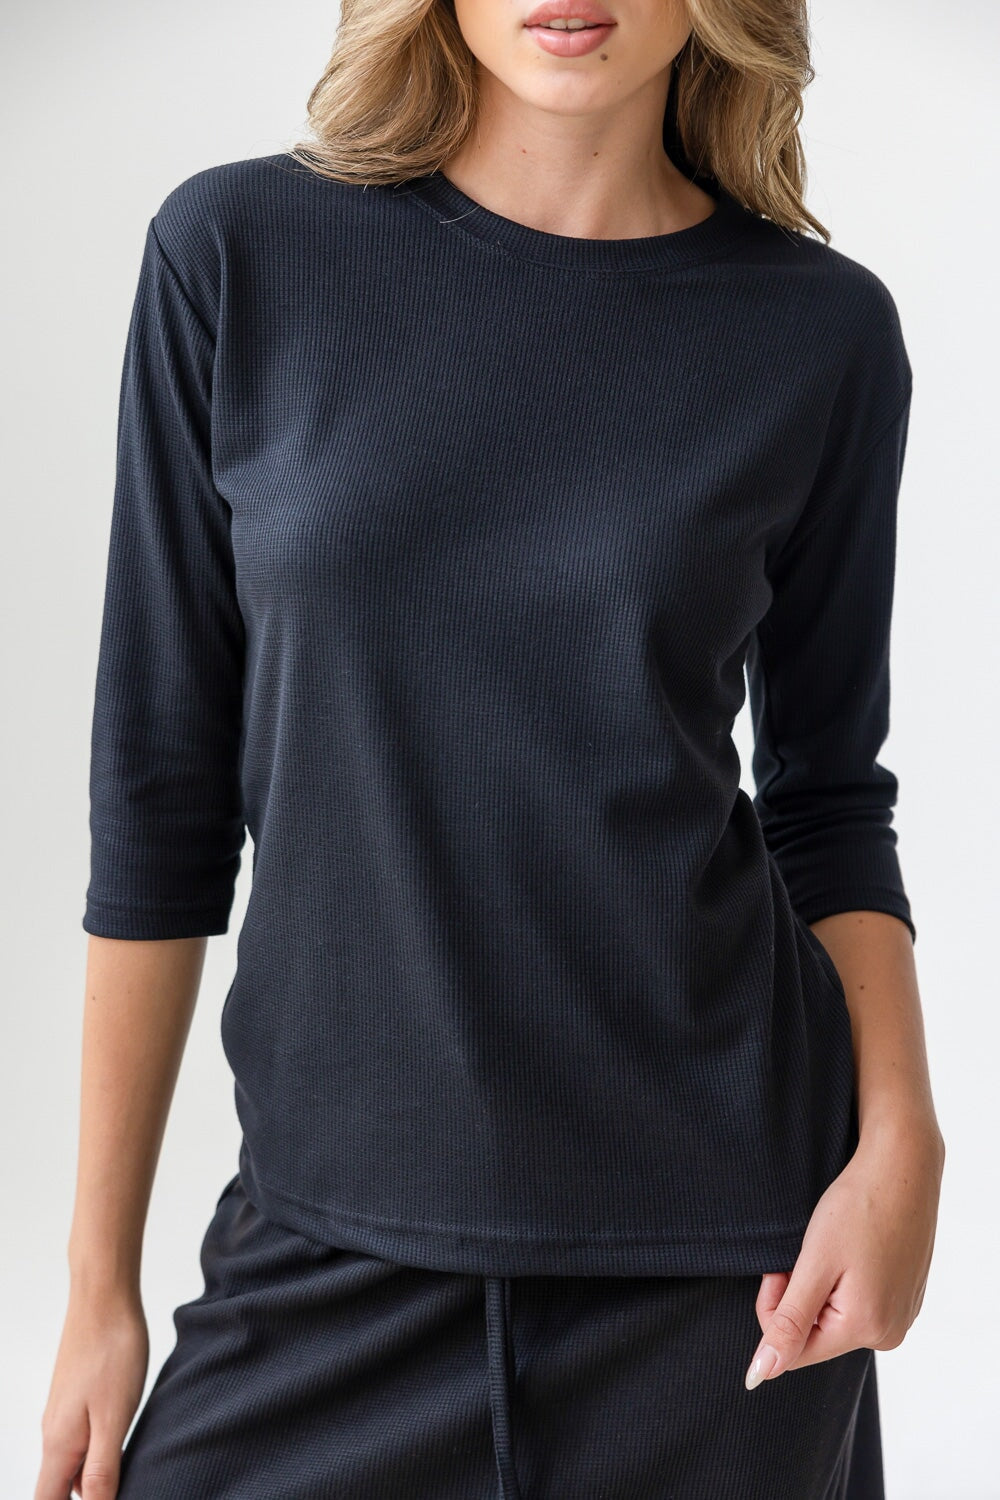 חולצת מלאני TwentySix Black One Size 